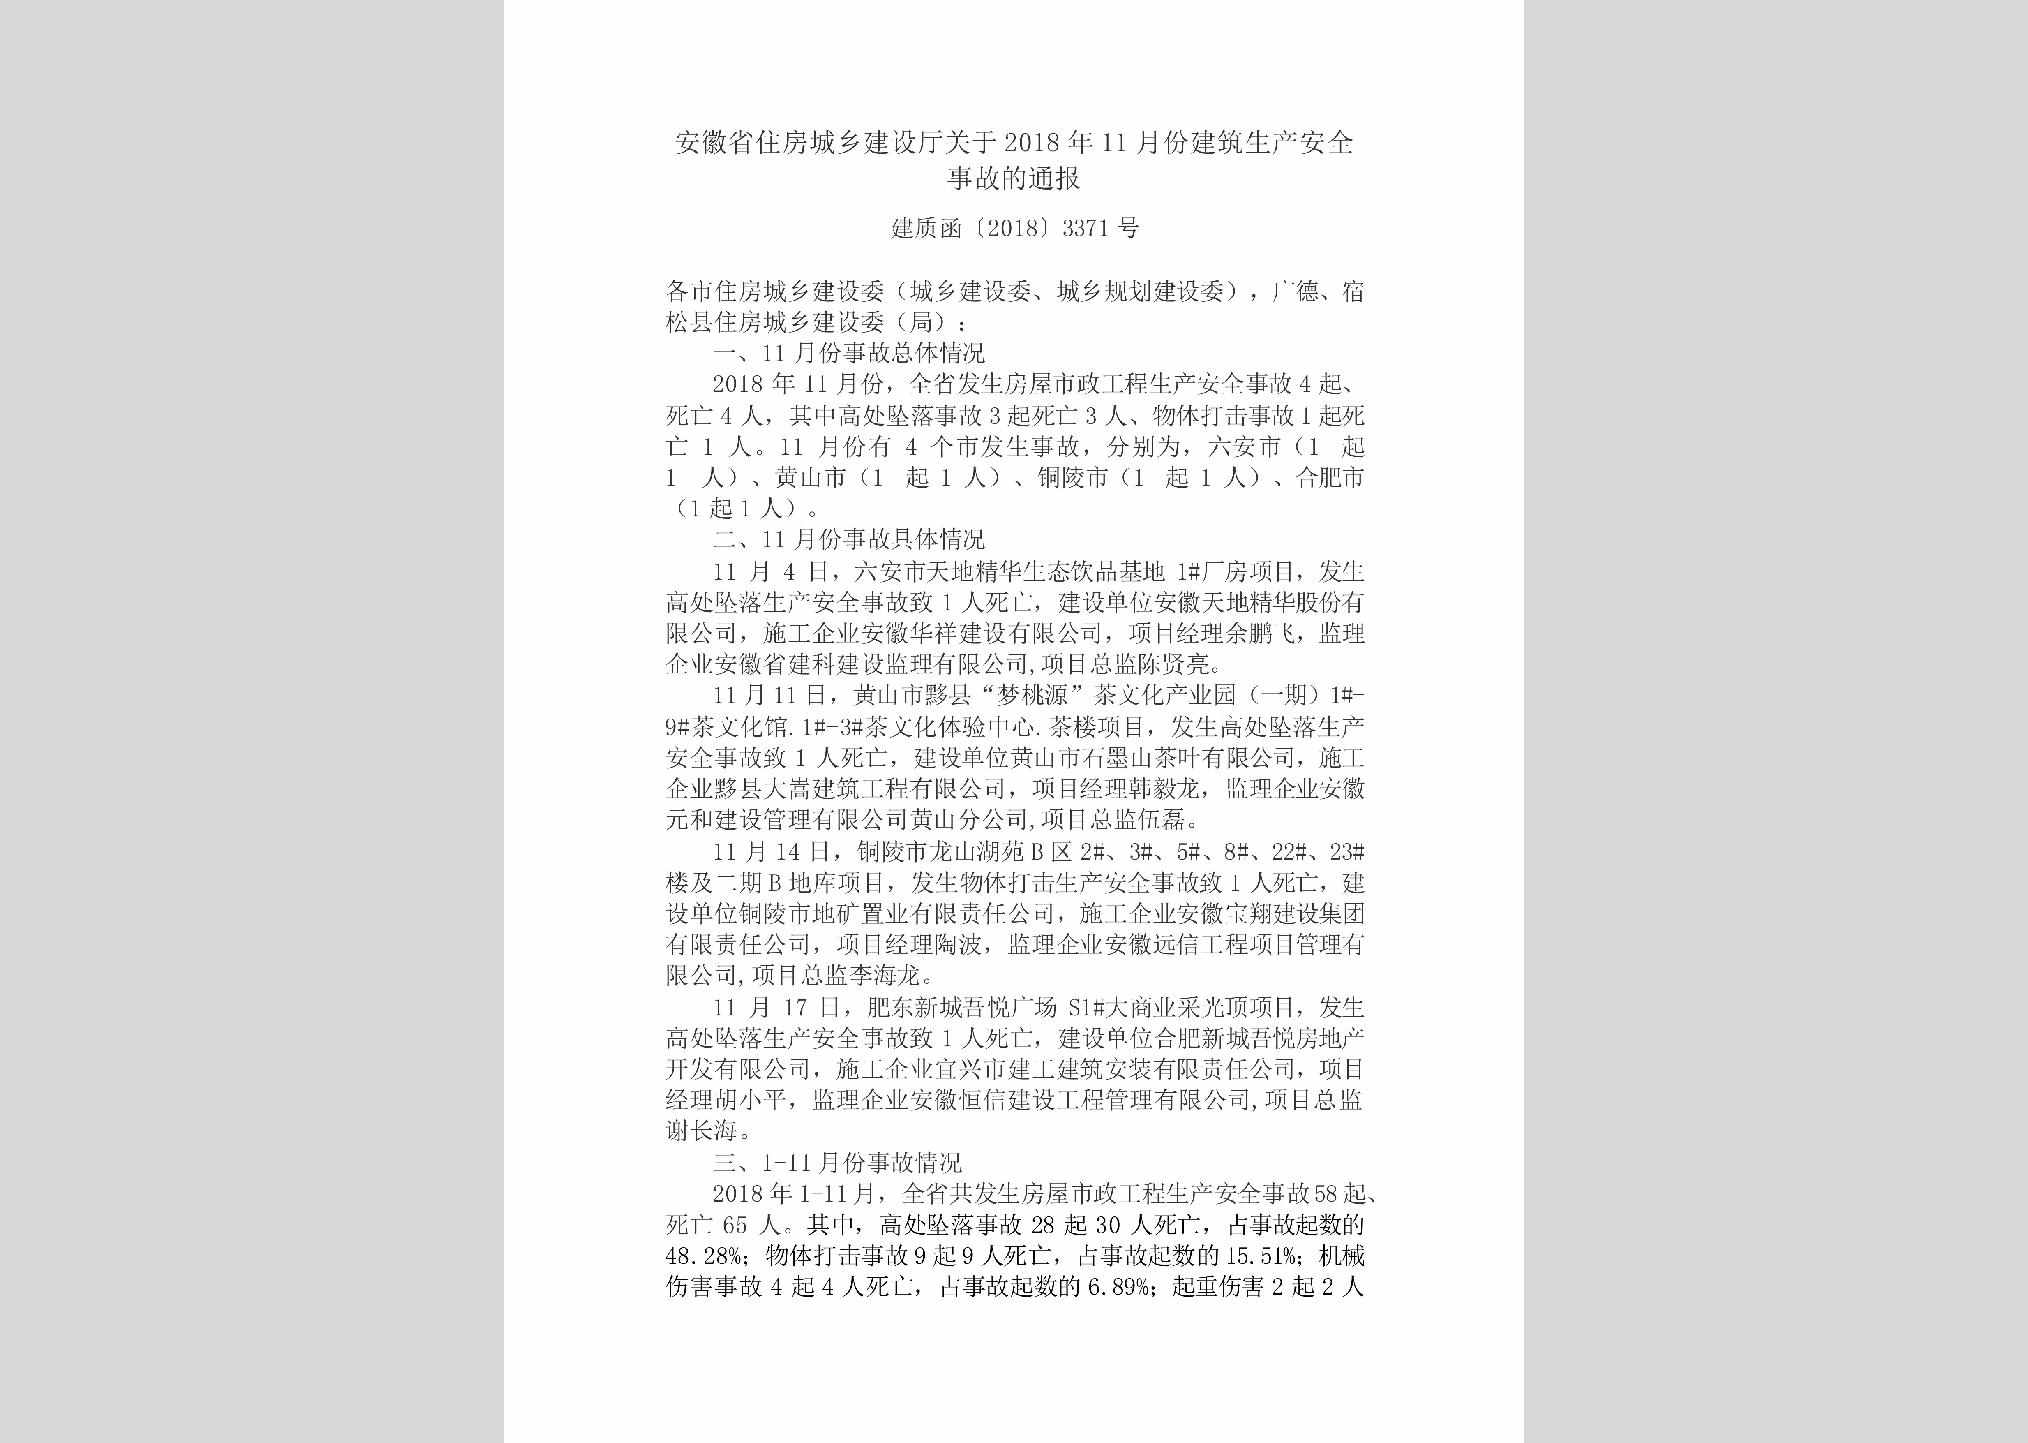 建质函[2018]3371号：安徽省住房城乡建设厅关于2018年11月份建筑生产安全事故的通报